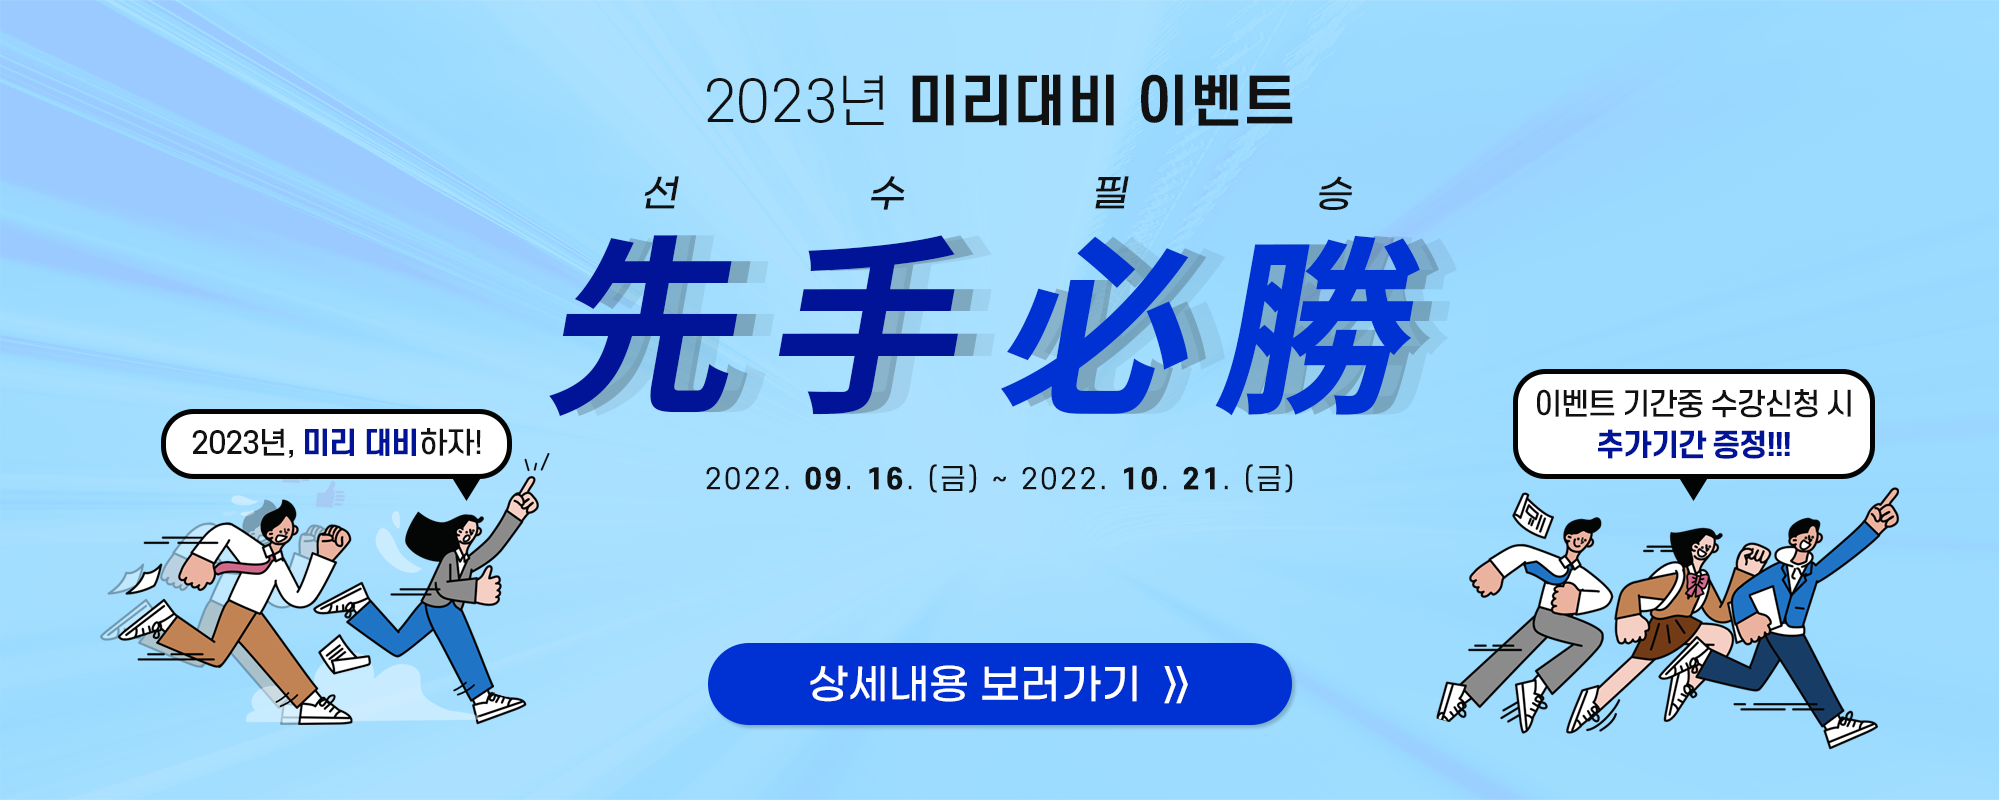 2023 미리대비! 선수필승 이벤트